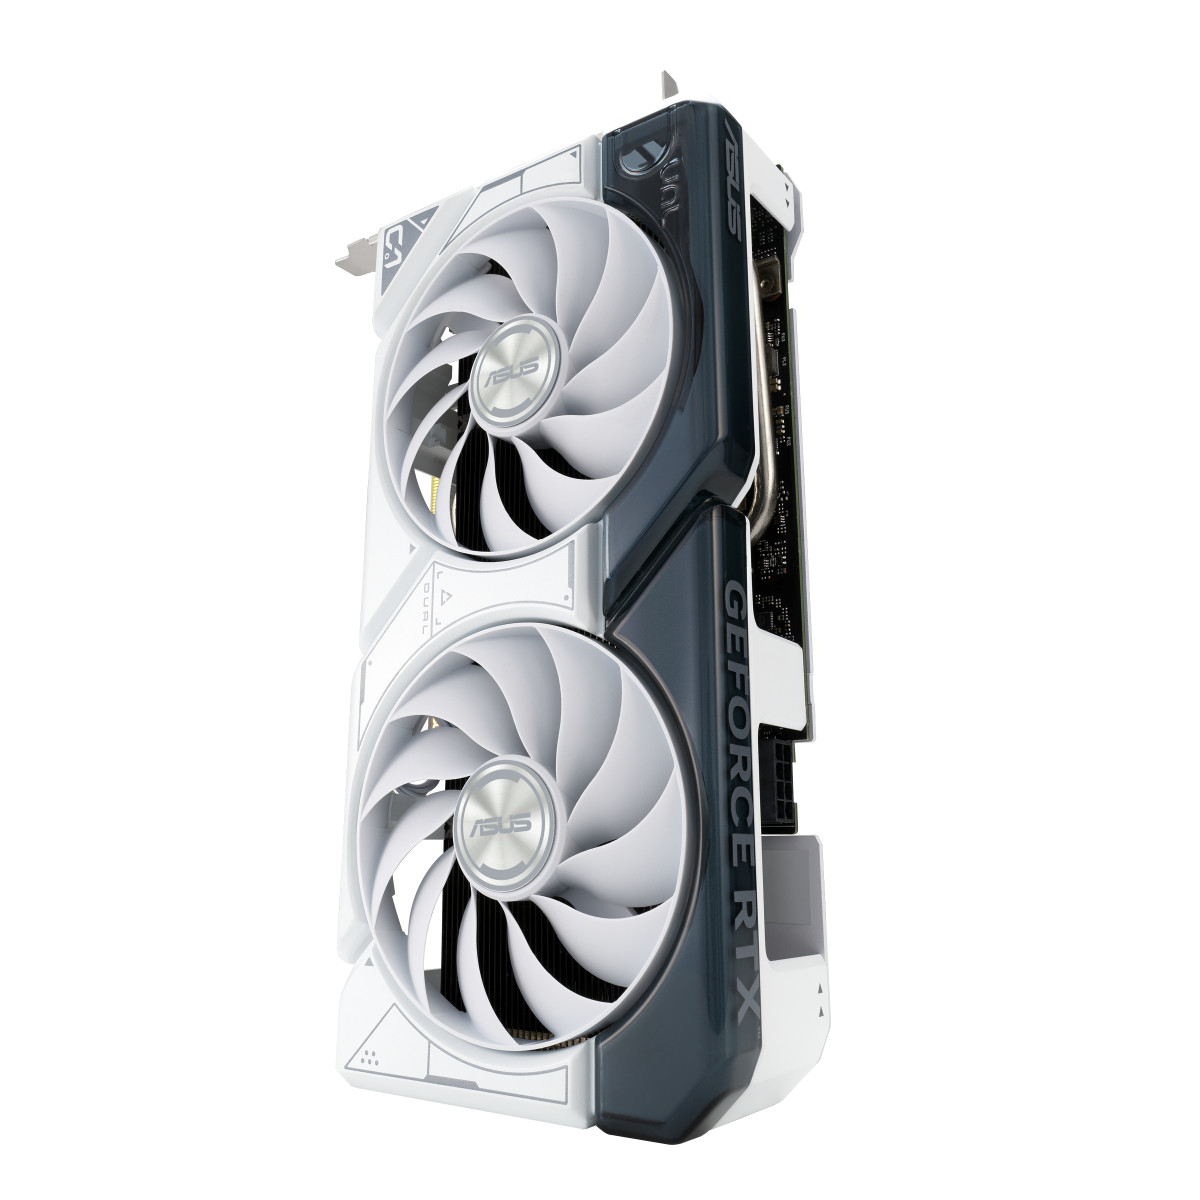 GPU NV 4060 Dual O8G White Fan